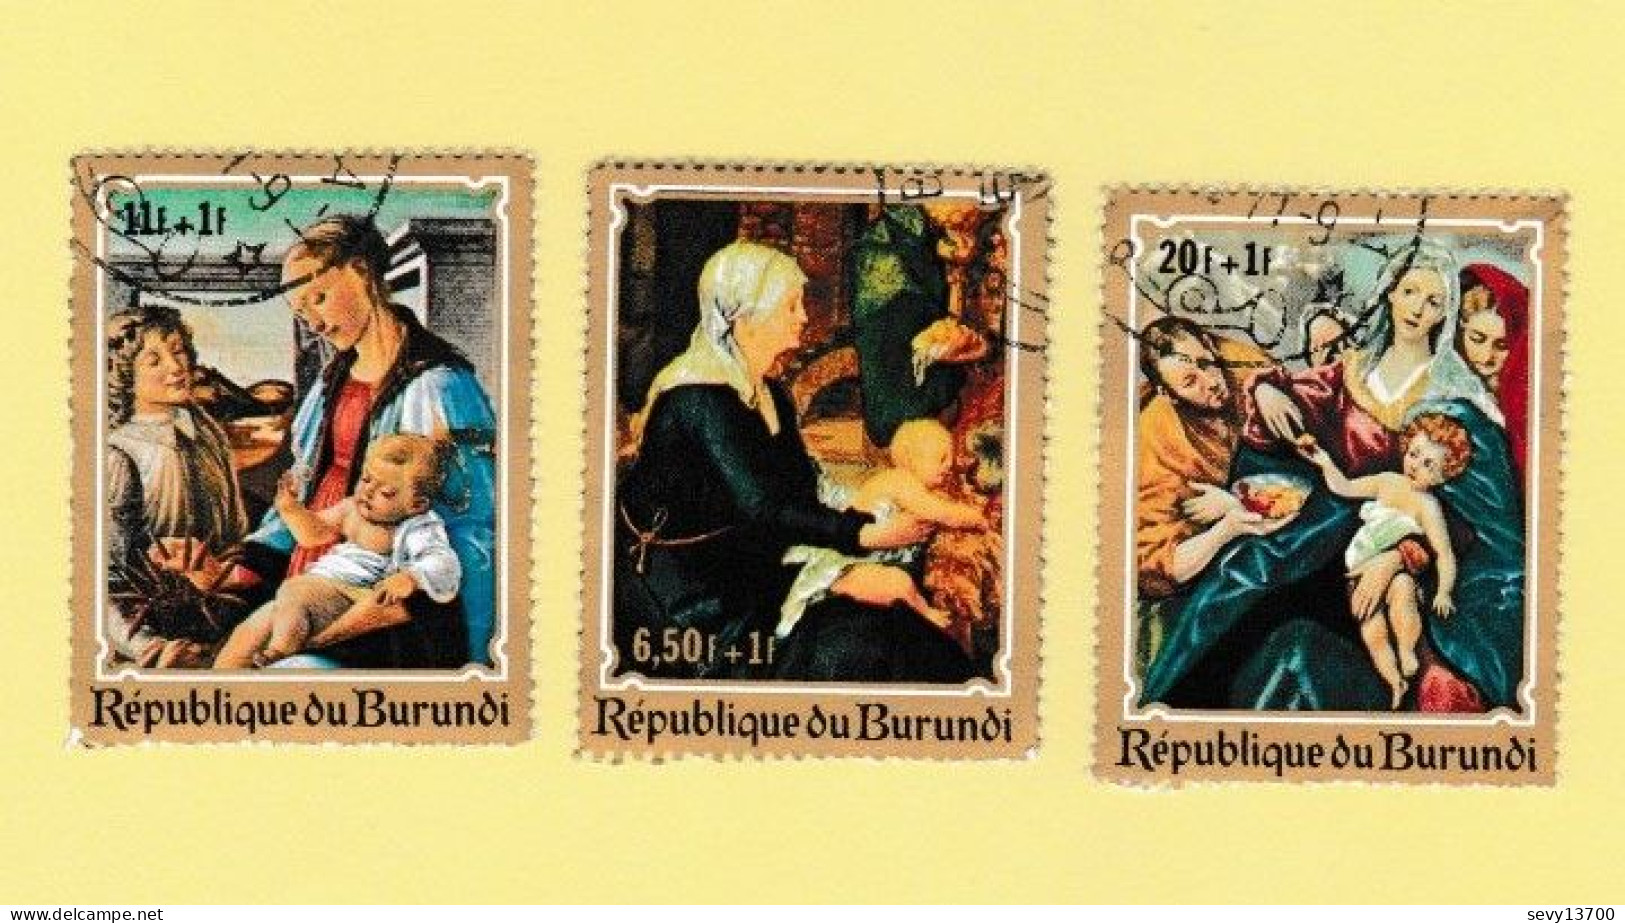 Burundi lot 29 timbres tableaux, peinture le Christ - jugement, chemin de croix, crucifiction, vierge et l'enfant